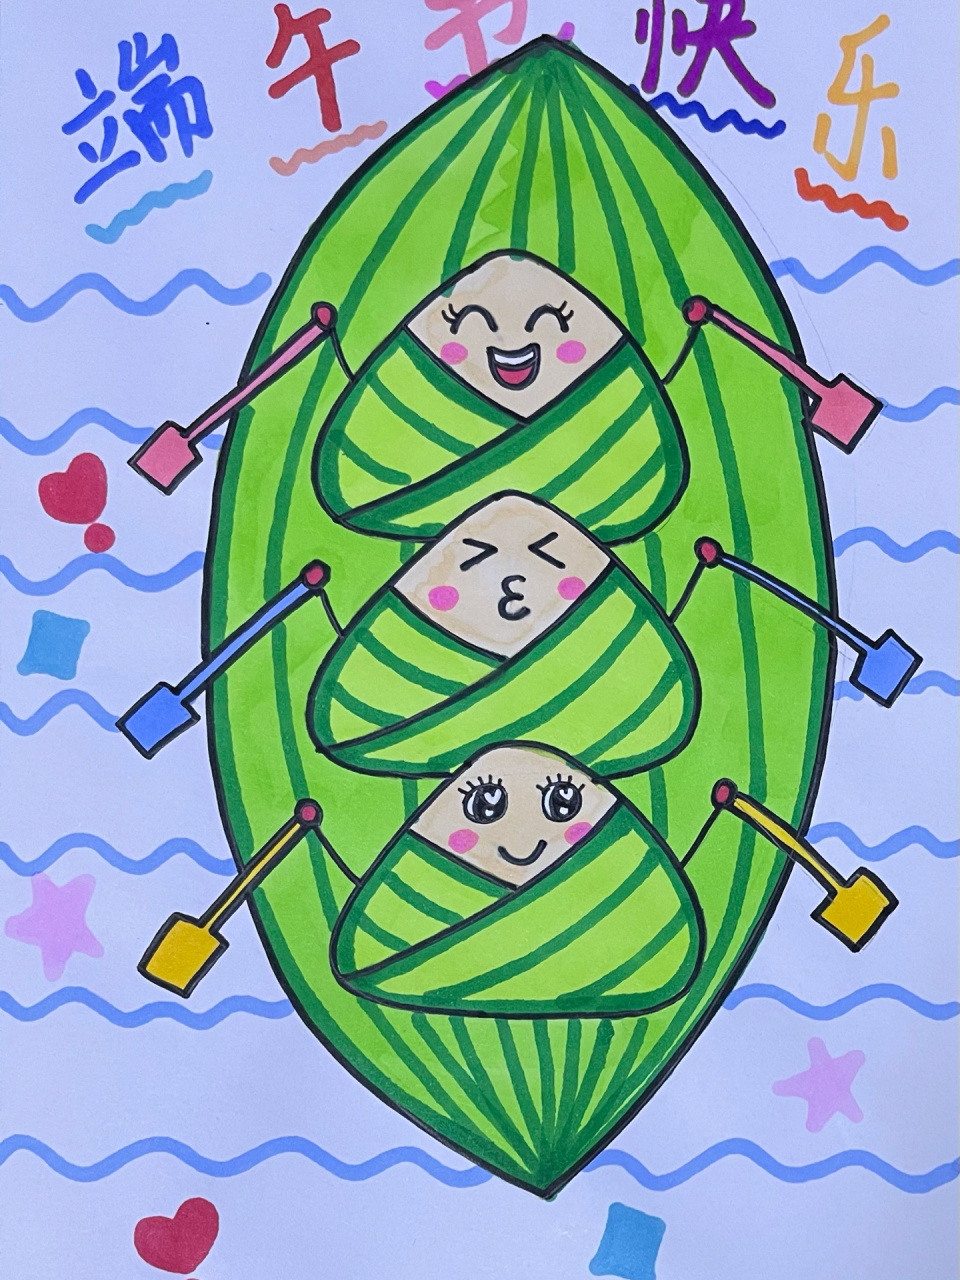 【端午节划龙舟】/粽子儿童画 三个三角形画出一个划龙舟的粽子儿童画